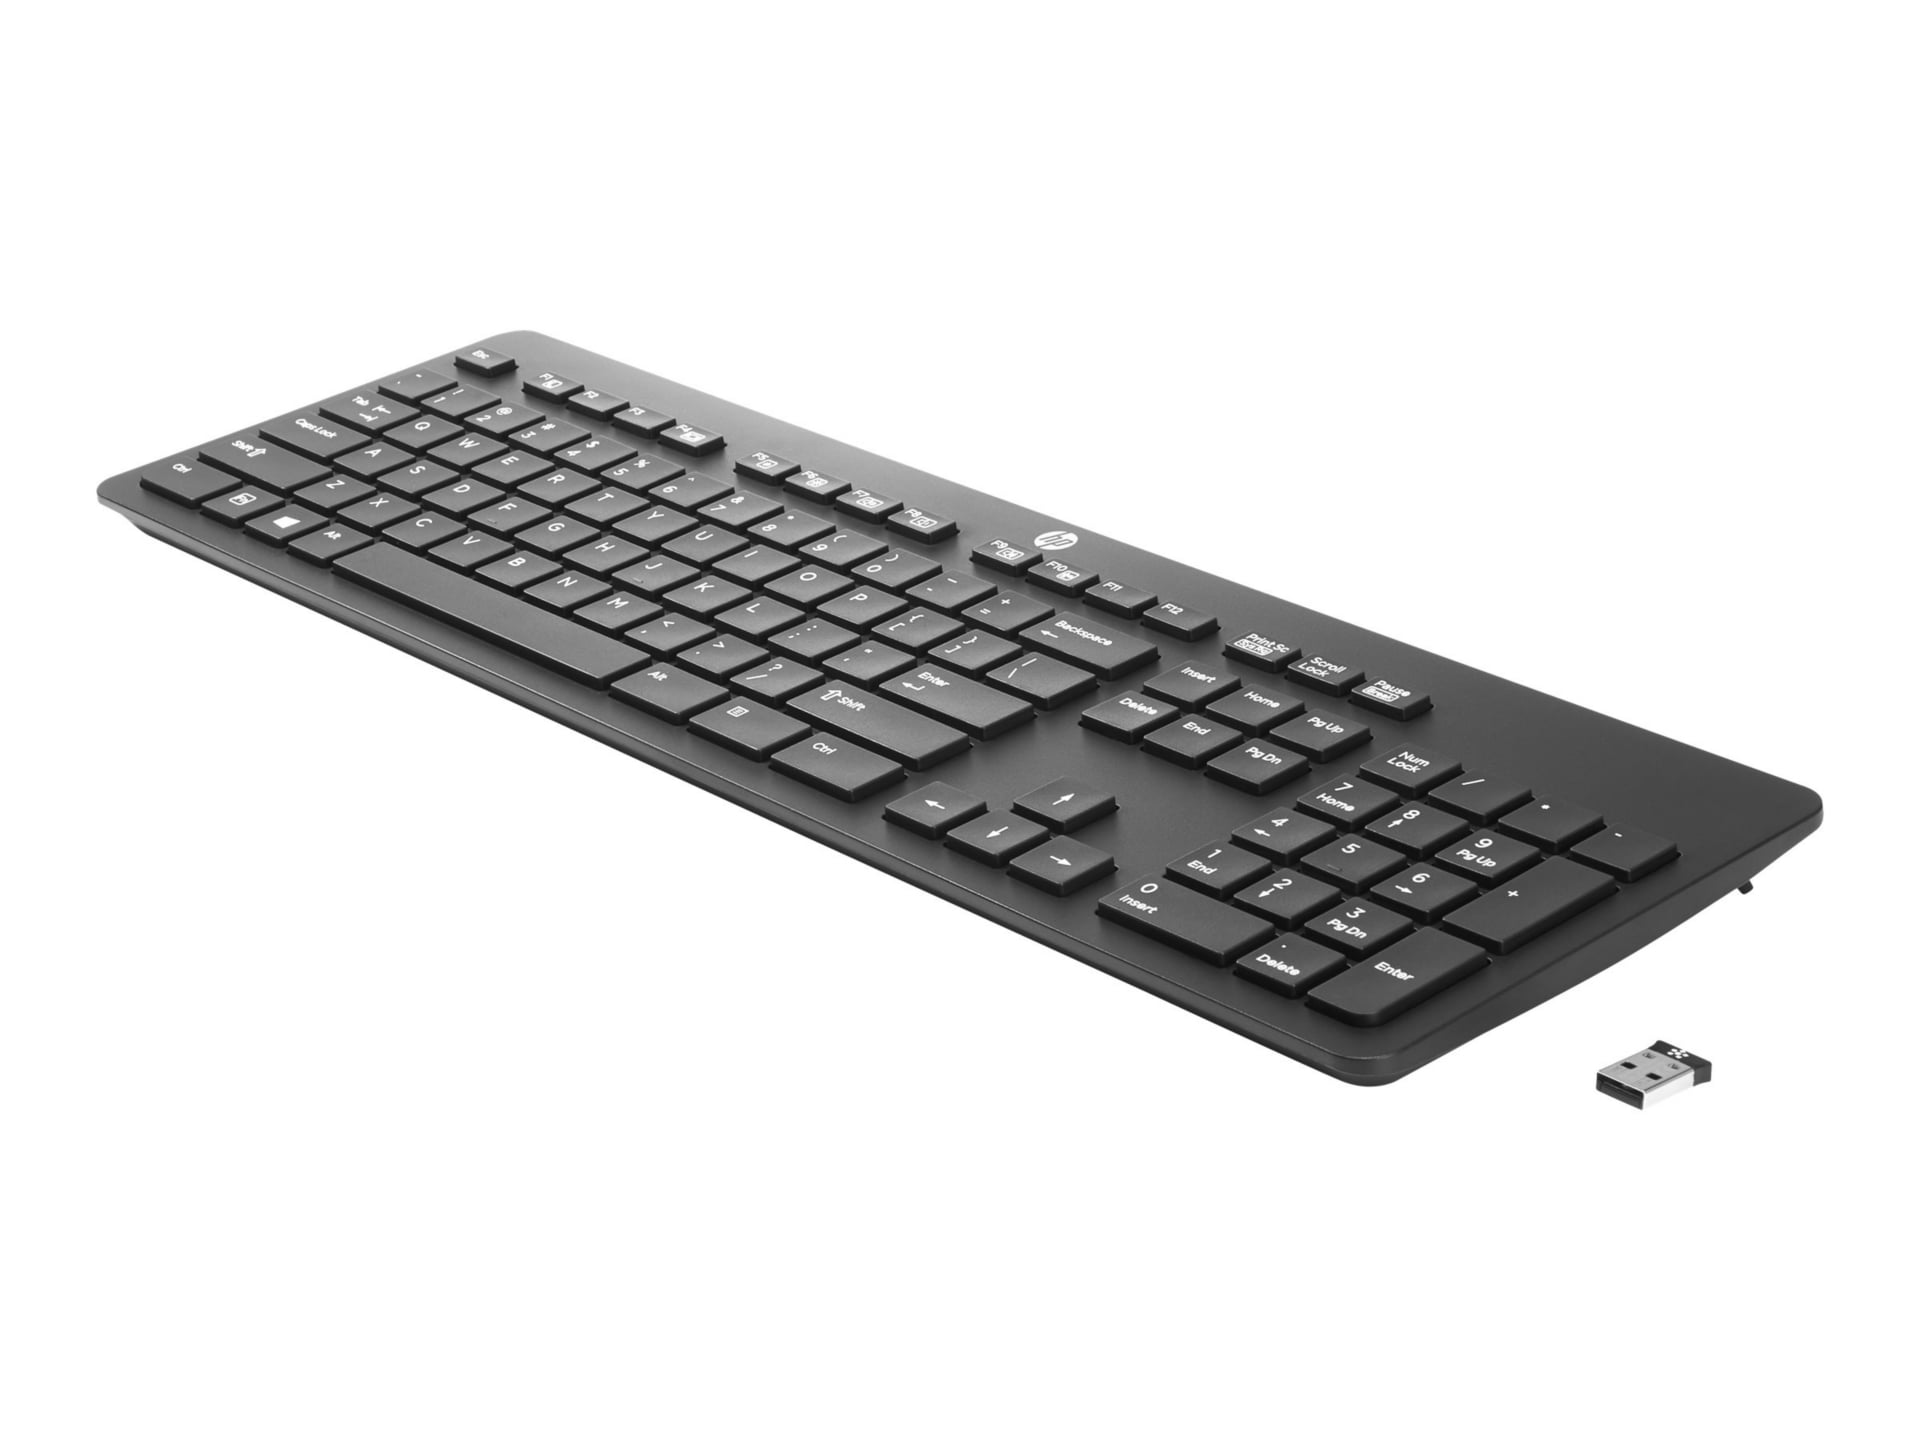 HP Link-5 - keyboard - US - Smart Buy